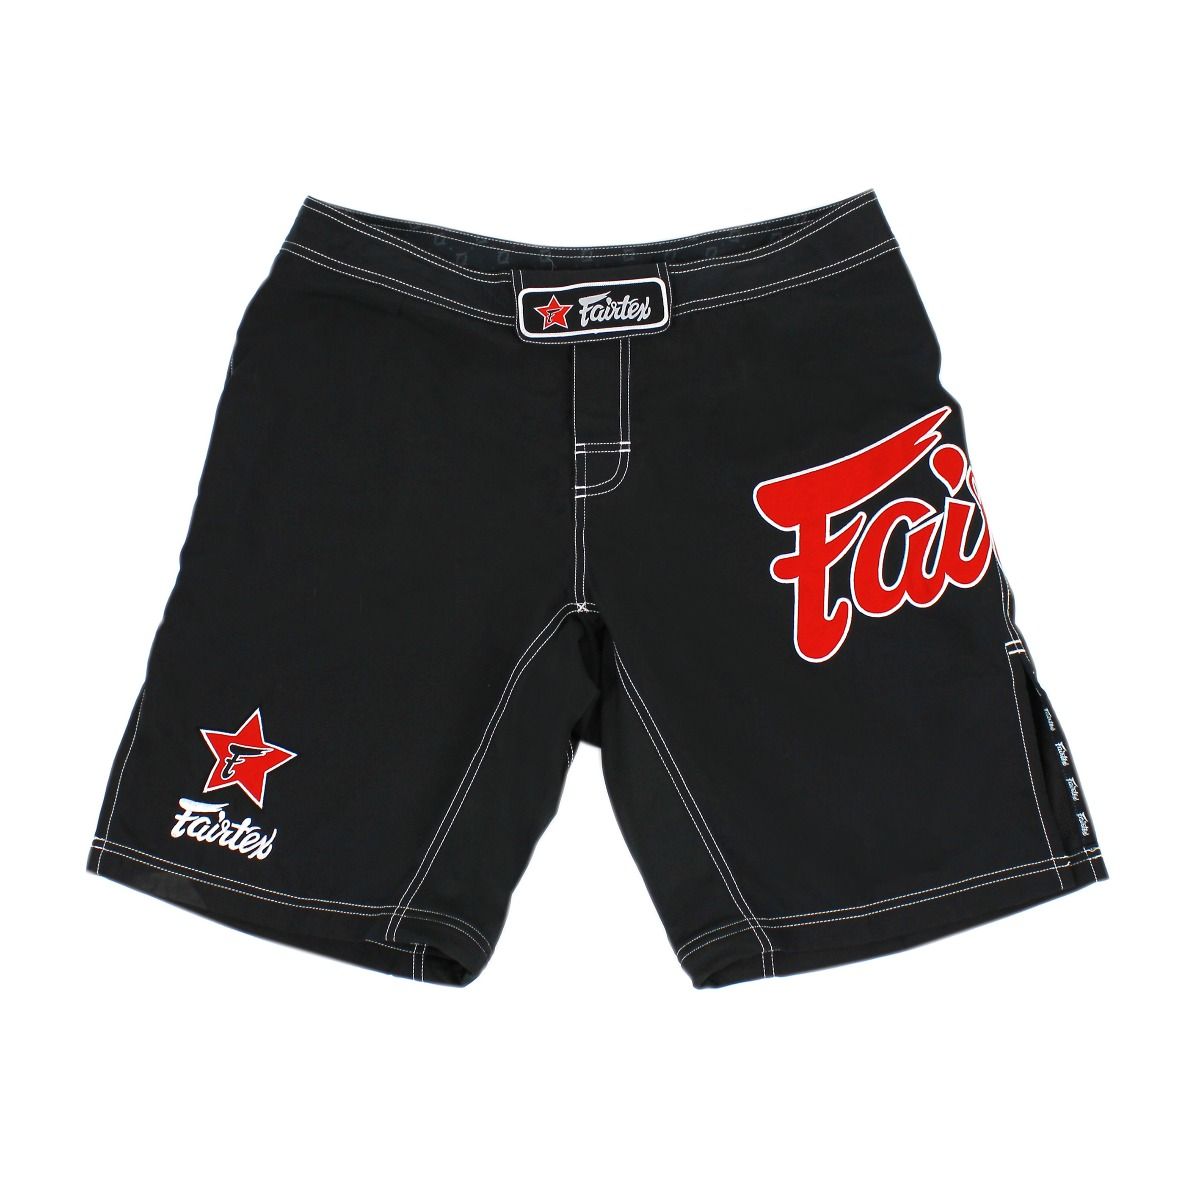 Shorts para MMA Fairtex AB1 Negro - Microfibra